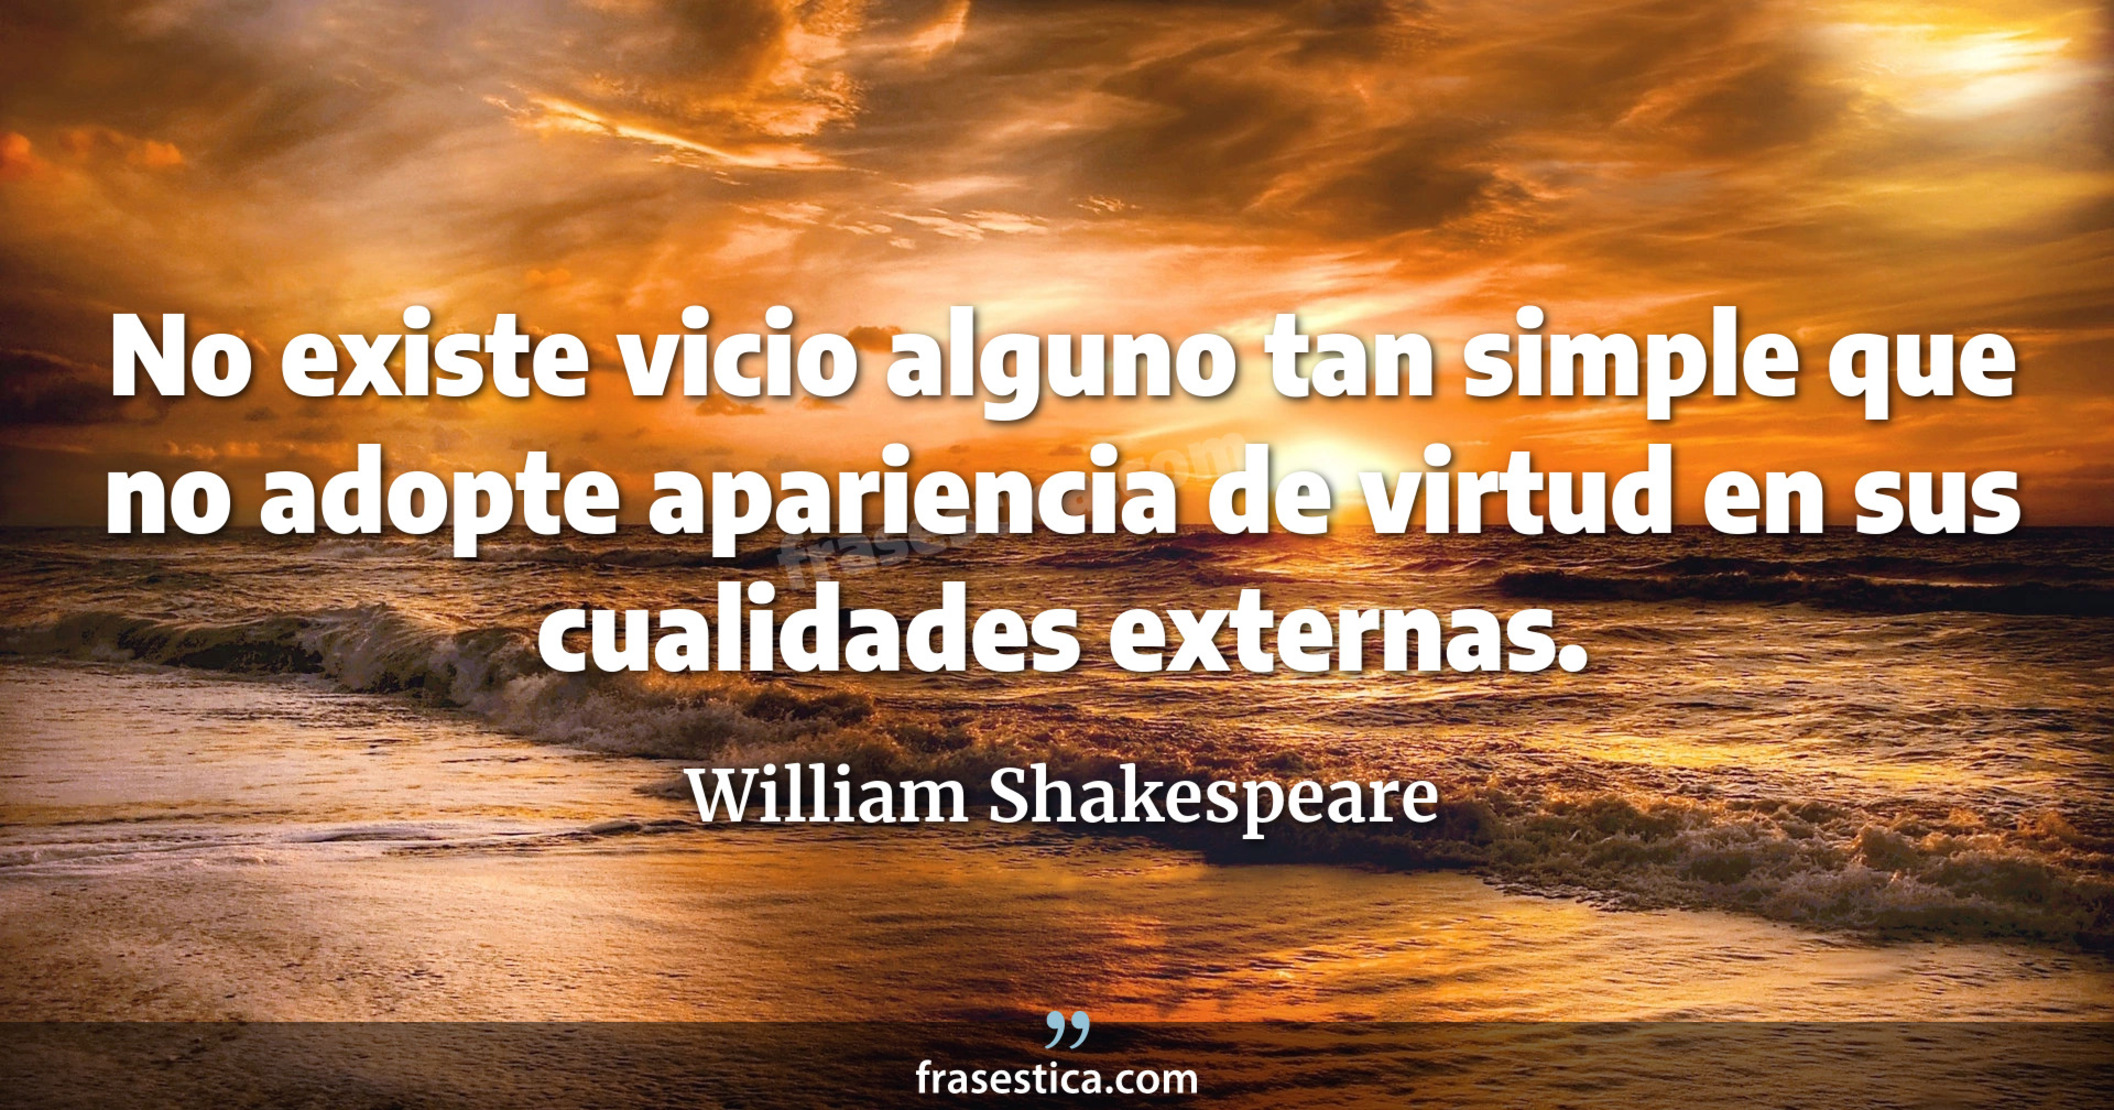 No existe vicio alguno tan simple que no adopte apariencia de virtud en sus cualidades externas. - William Shakespeare